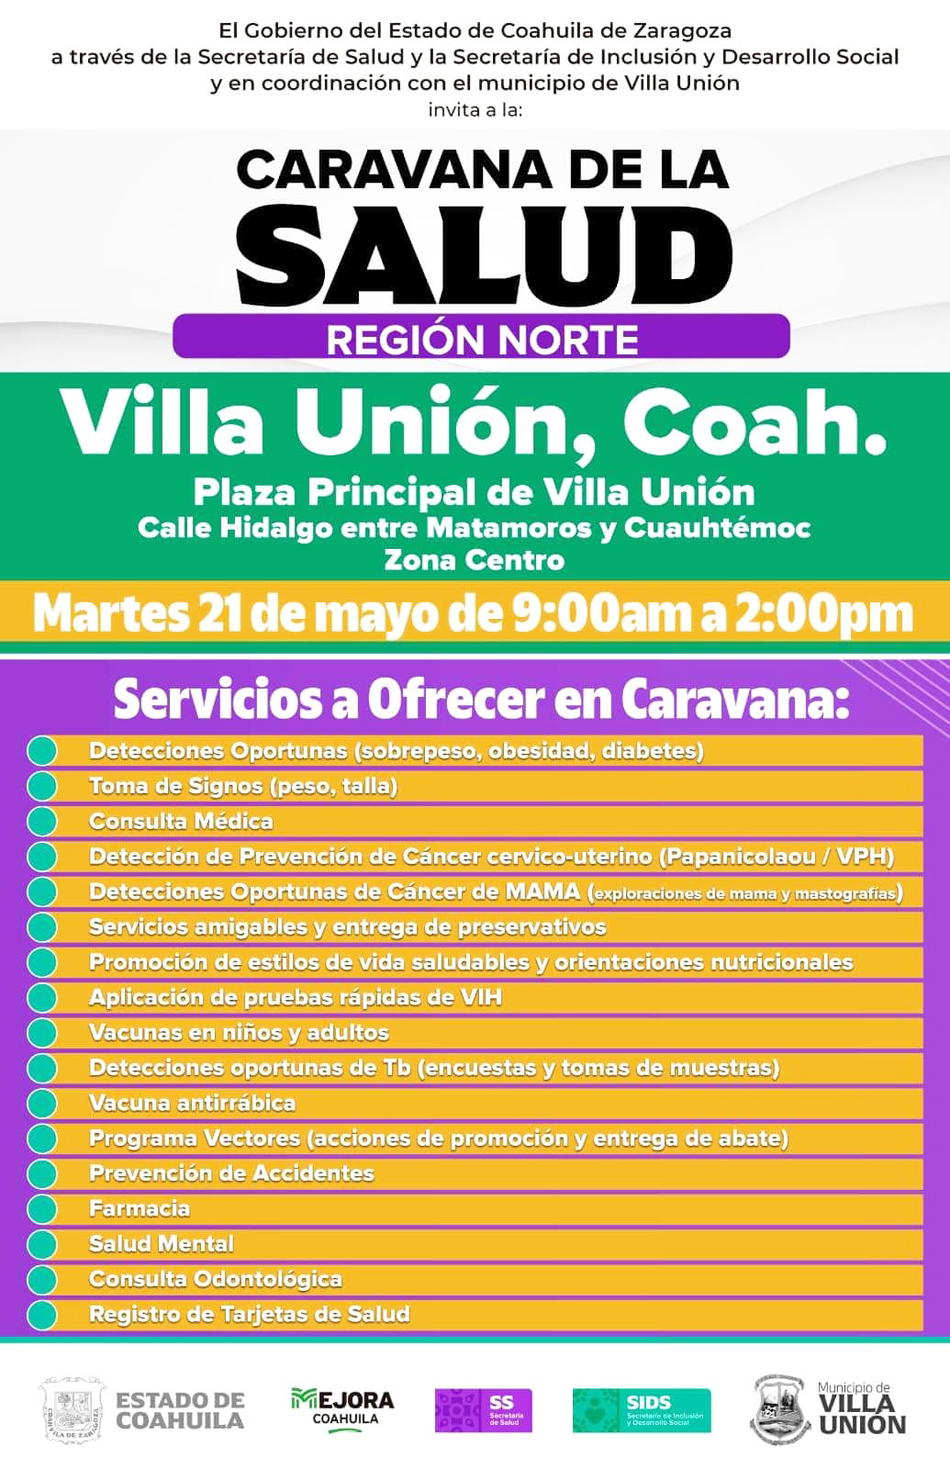 Llegará a Villa Unión la Caravana de la Salud este martes